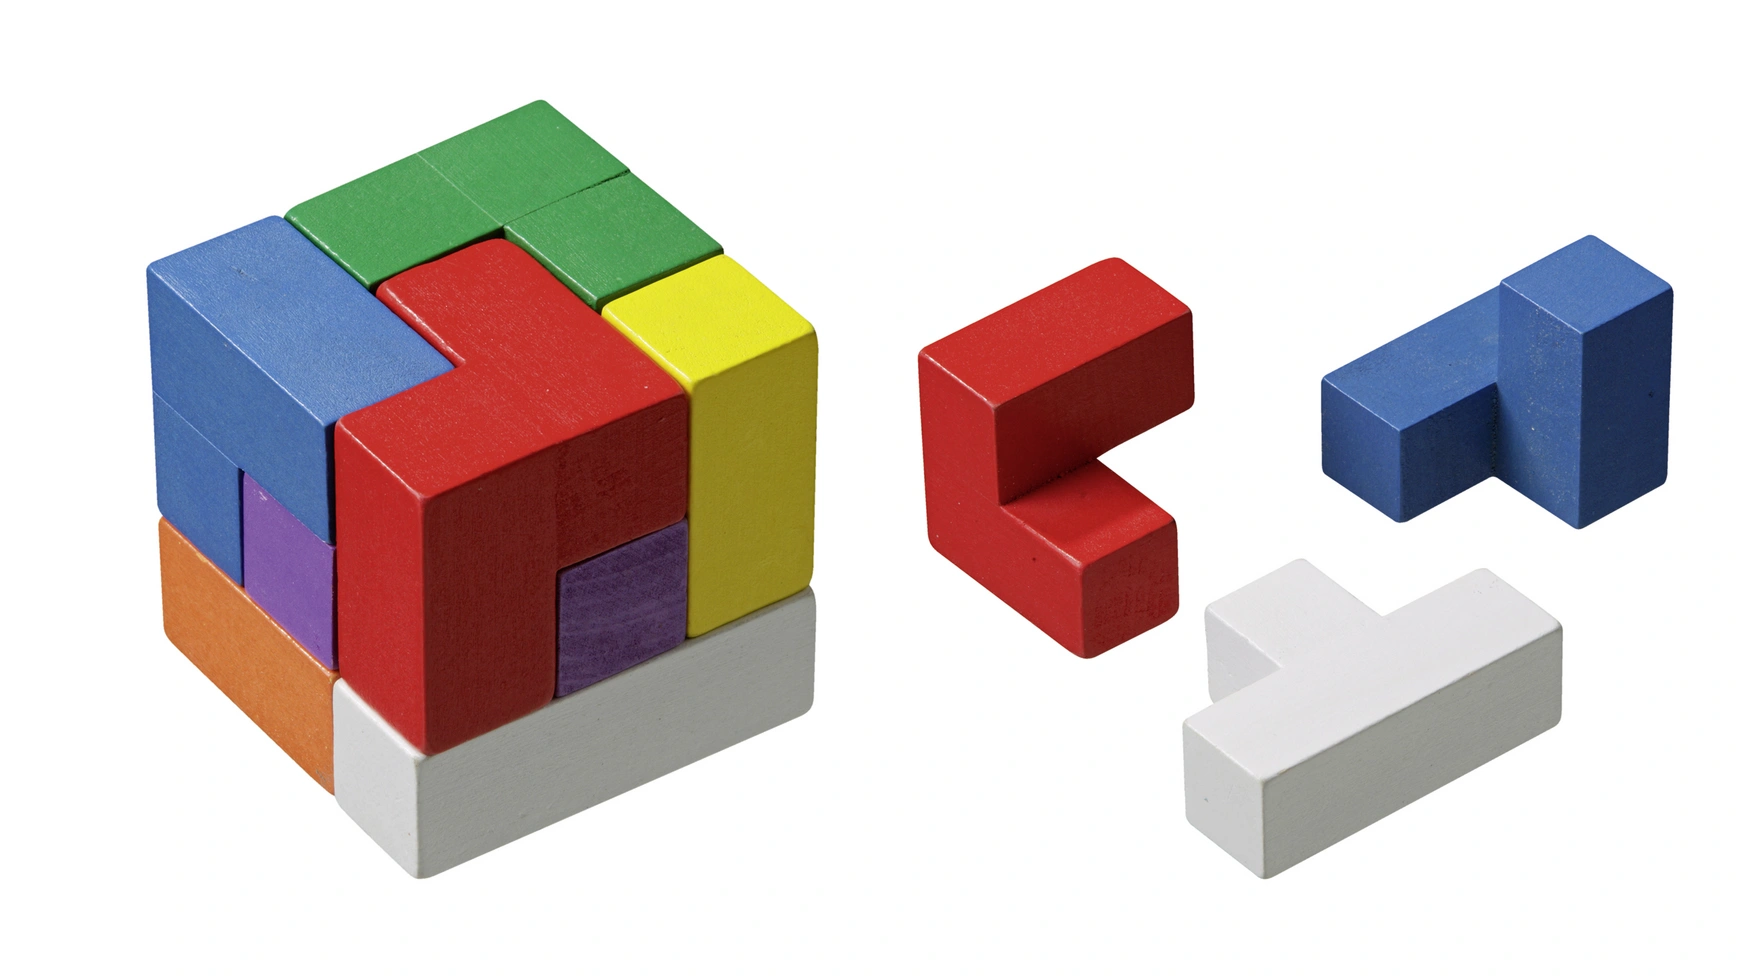 Кубики сомы, разноцветные Philos-Spiele магический куб 3x3x3 пазл оптовая цена кубик moyu 3x3 yongjun magico cubo 3 3 пазл без наклеек профессиональный скоростной куб игрушка